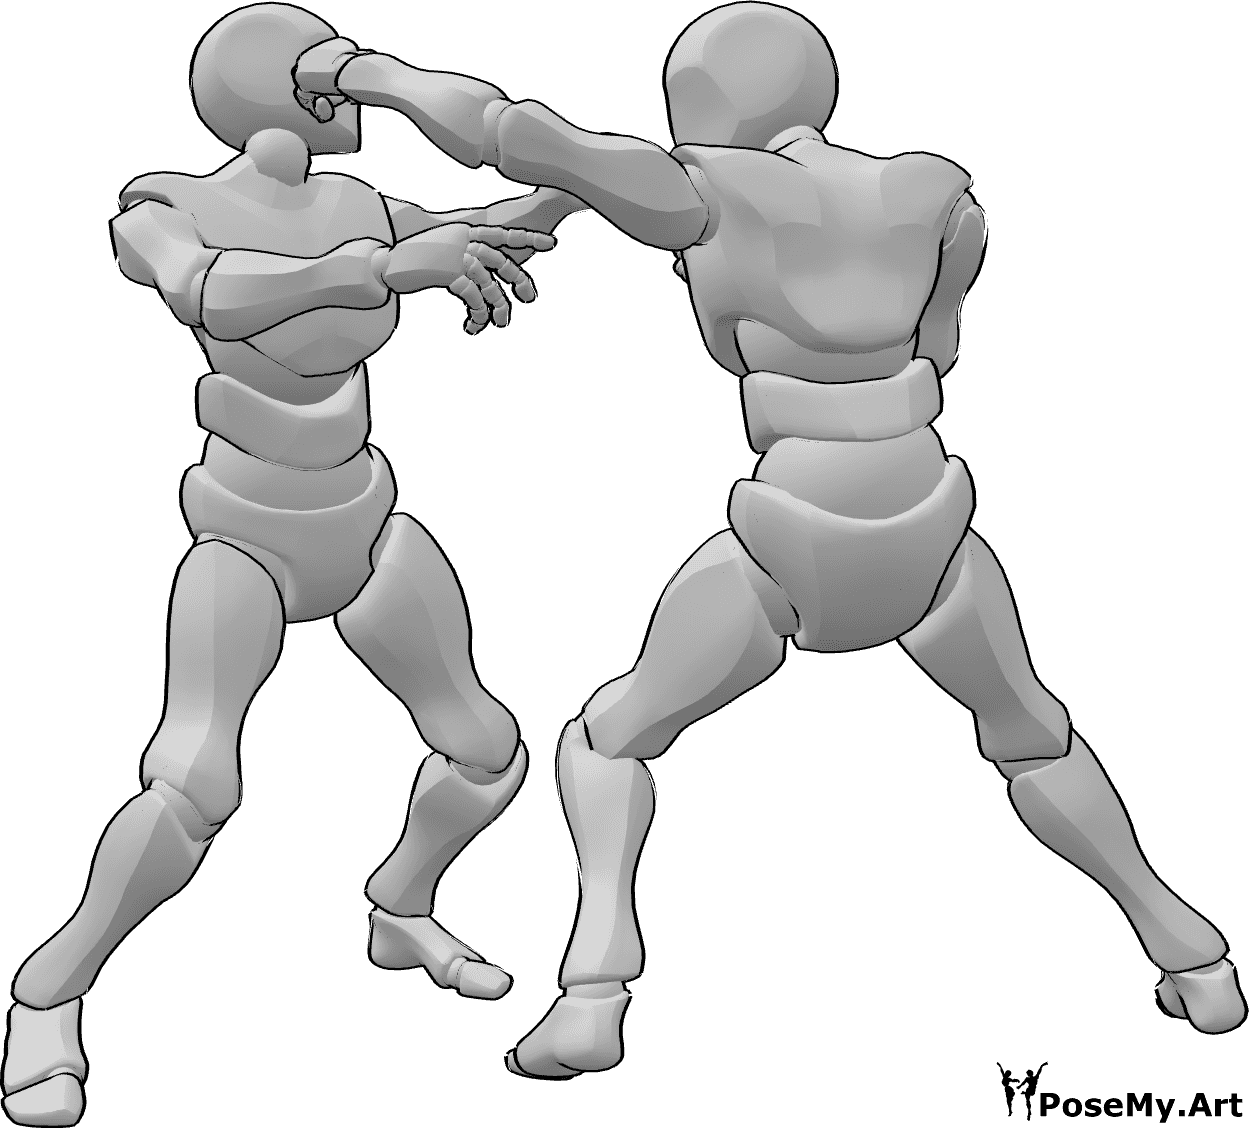 Référence des poses- Pose du coup de poing à la tête - Des hommes se battent, l'un frappe l'autre sur la tête pose